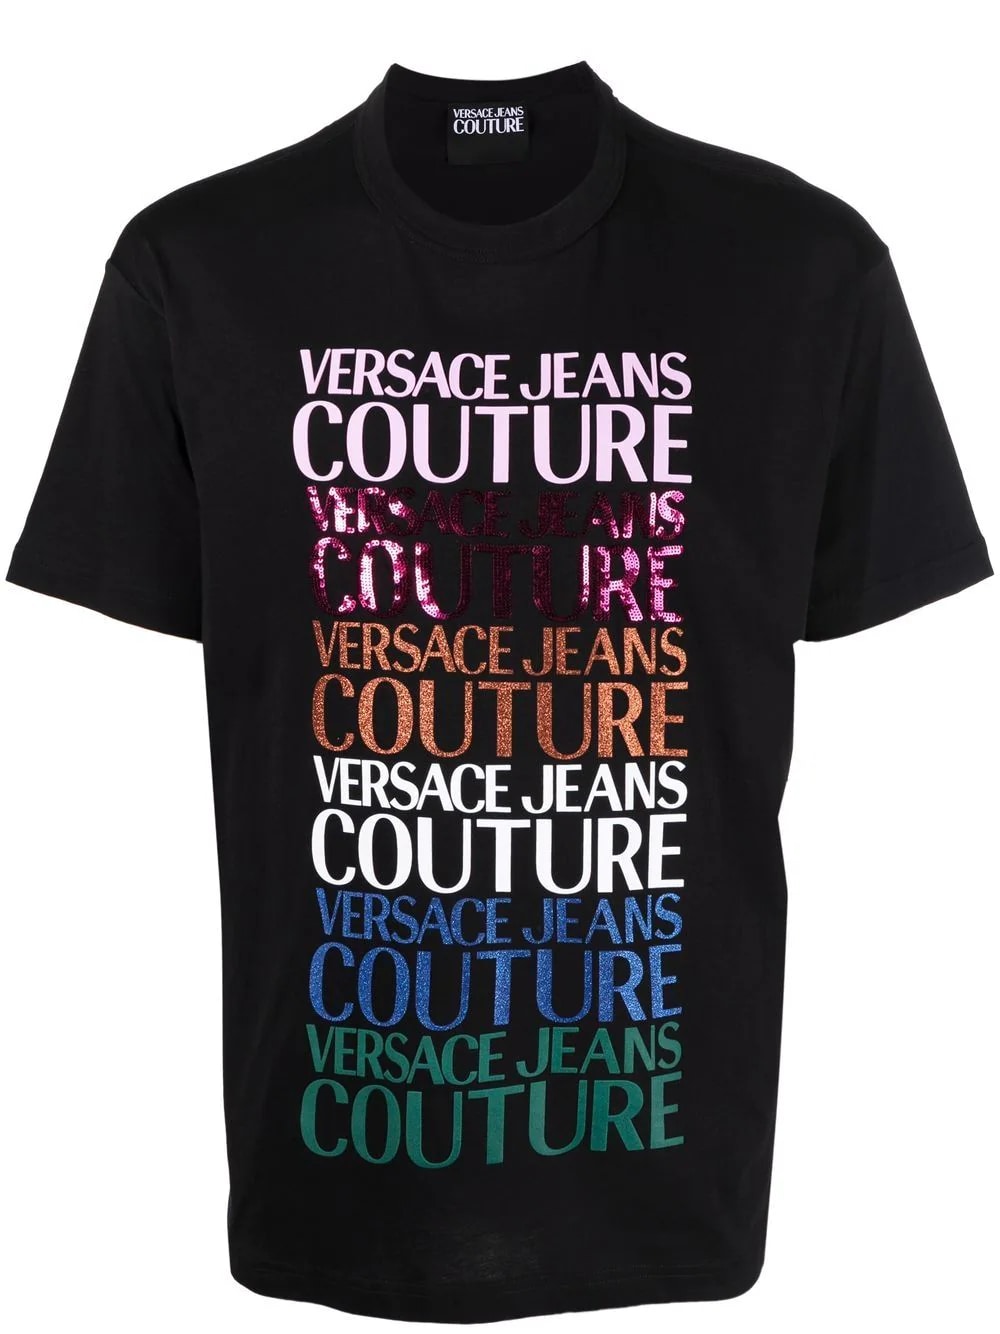 Camiseta de hombre lentejuelas Versace Jeans • Dolce Vita Boutique